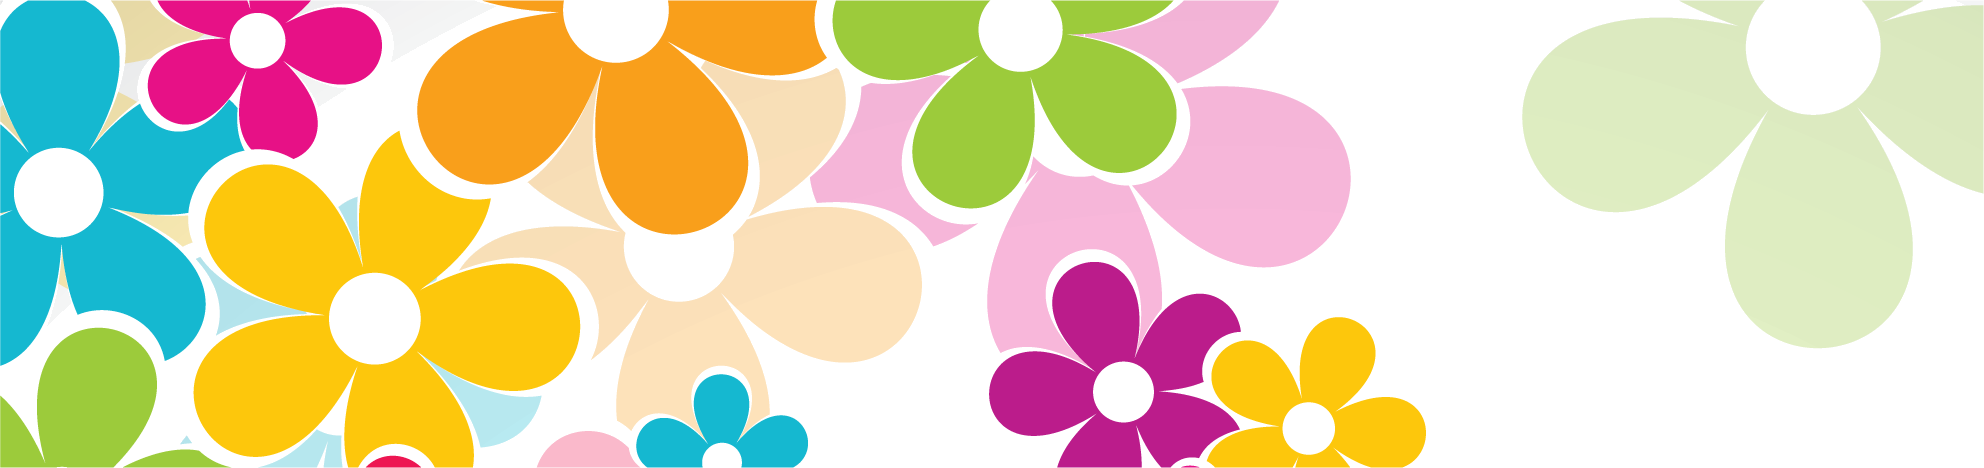 花や葉のイラスト フリー素材 バナー タイトル枠no 045 カラフルフラワー３